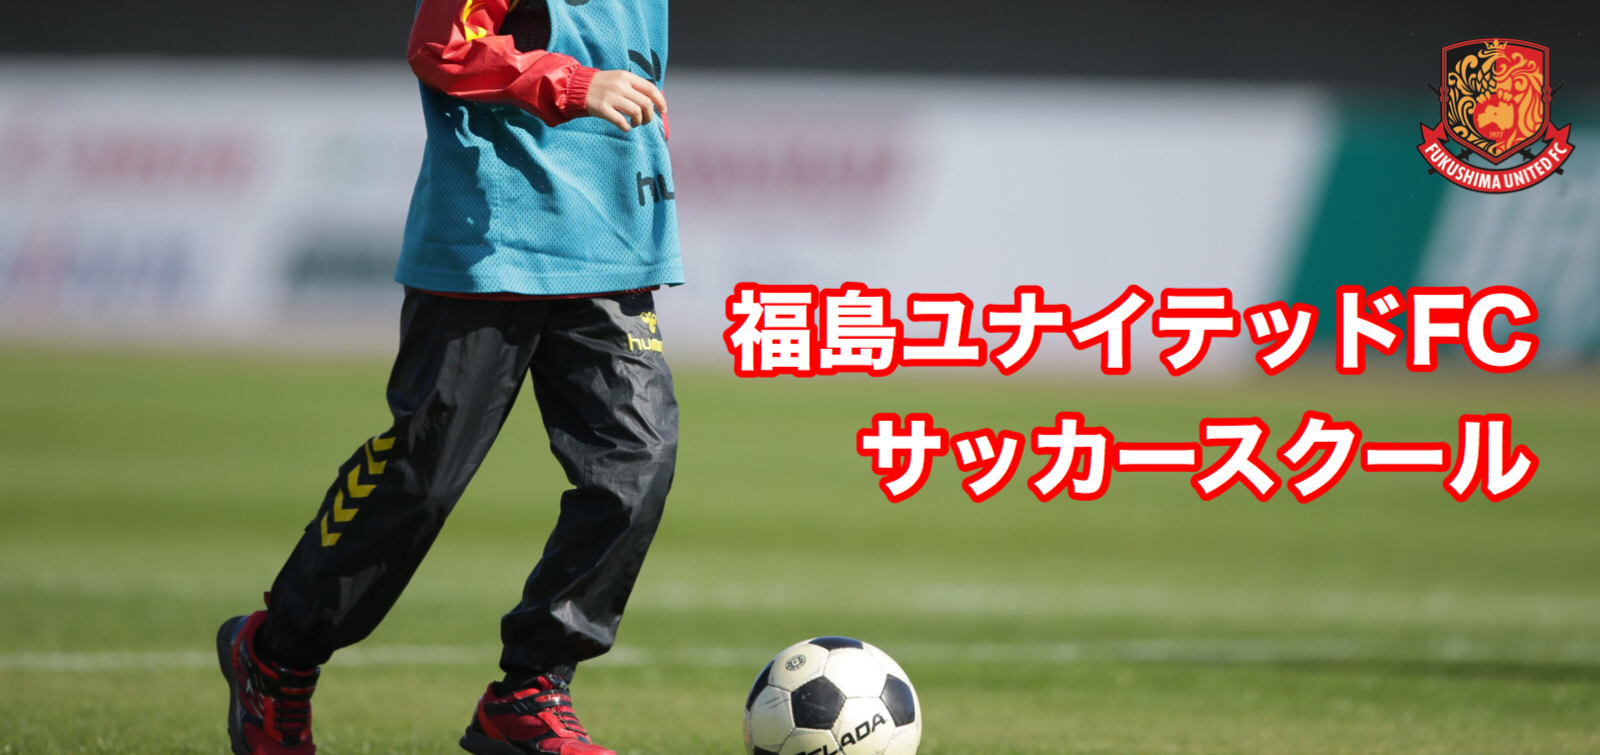 スクール 福島ユナイテッドｆｃ 公式サイト Fukushima United Fc Official Website